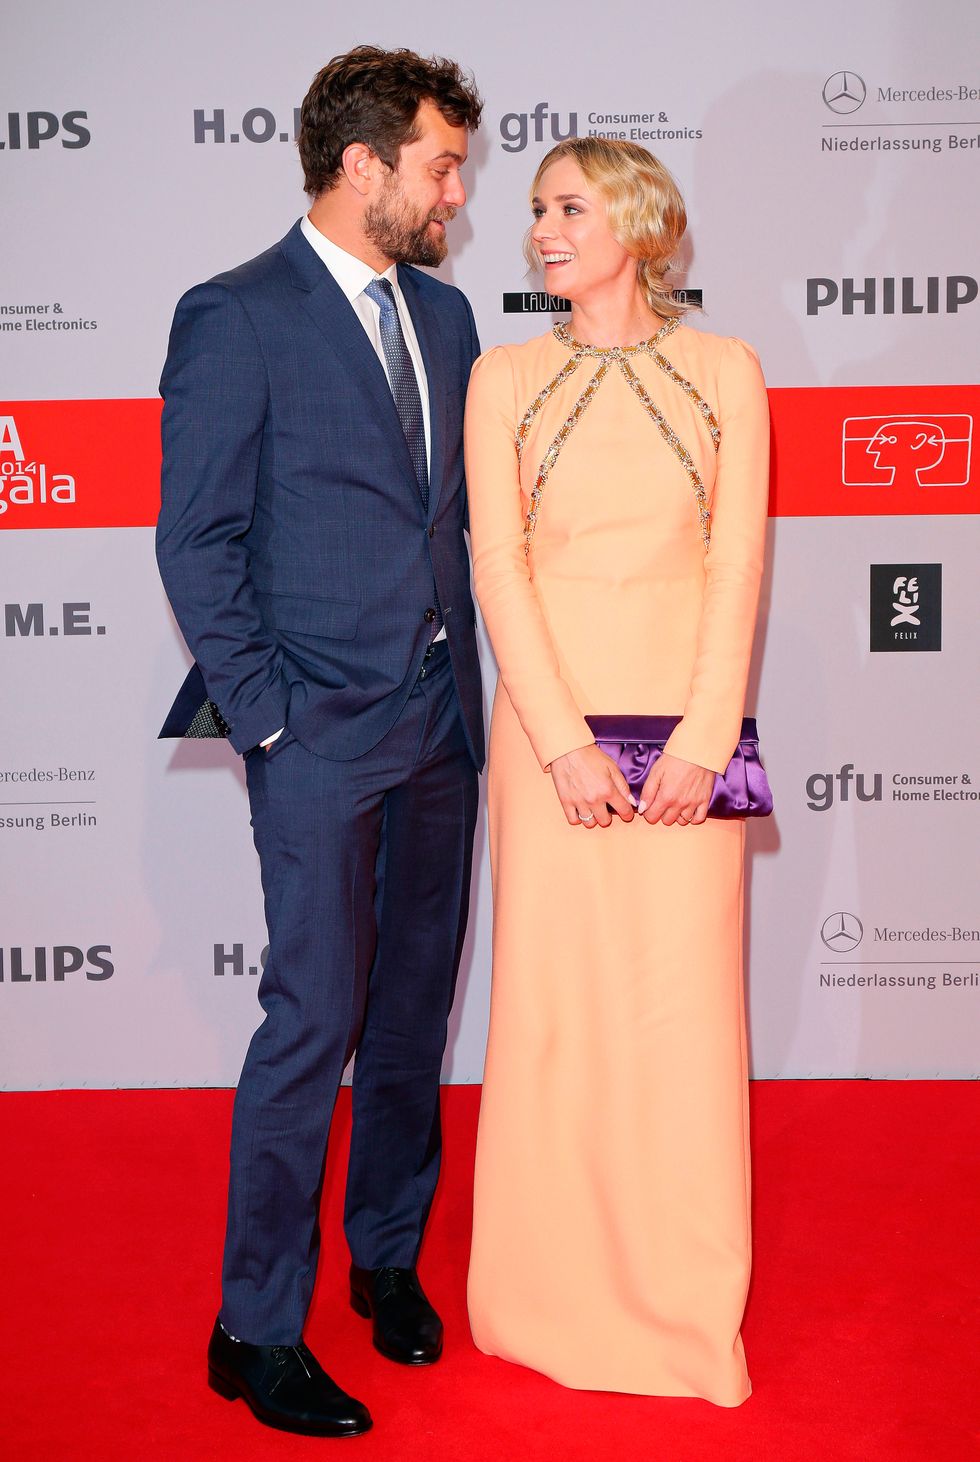 Stylish couple alert! Joshua Jackson and Diane Kruger